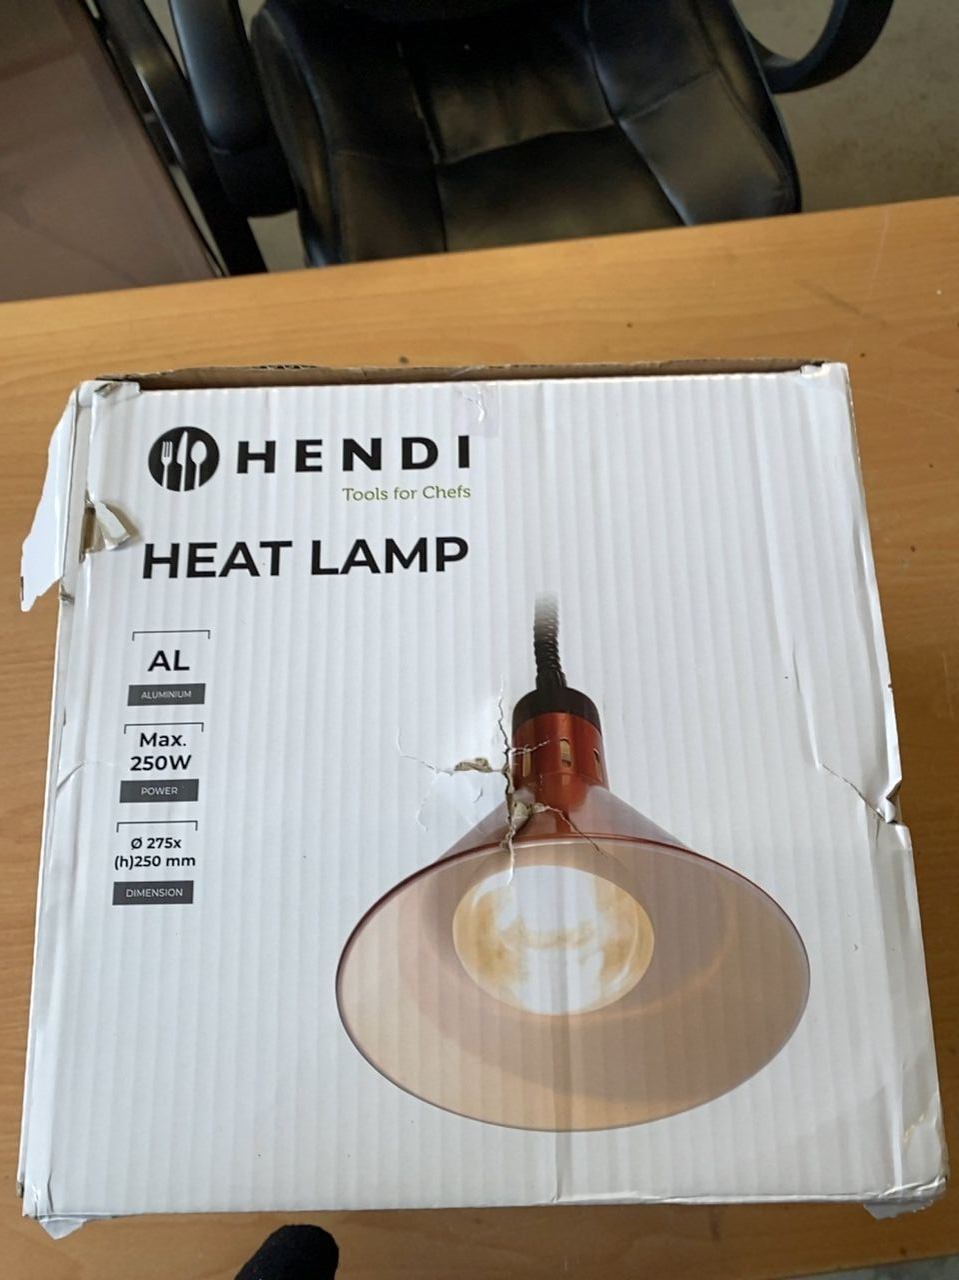 Výškově nastavitelná ohřívací lampa kónická Hendi Měděná, 230V/250W, ø275x(H)250mm